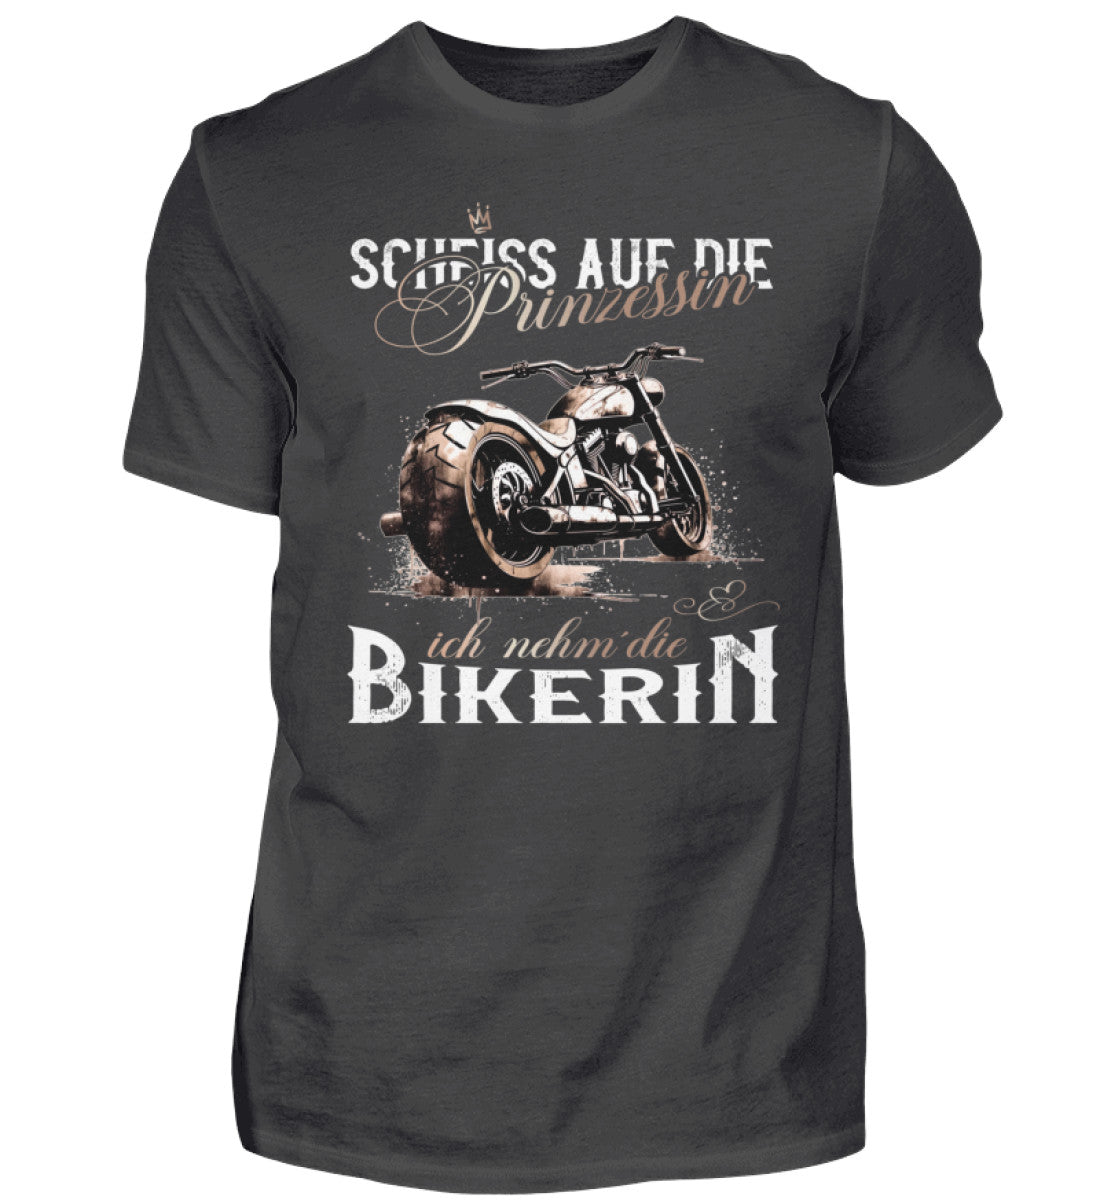 Ein Biker T-Shirt für Motorradfahrer von Wingbikers mit dem Aufdruck, Scheiß auf die Prinzessin - Ich nehm´ die Bikerin - in dunkelgrau.